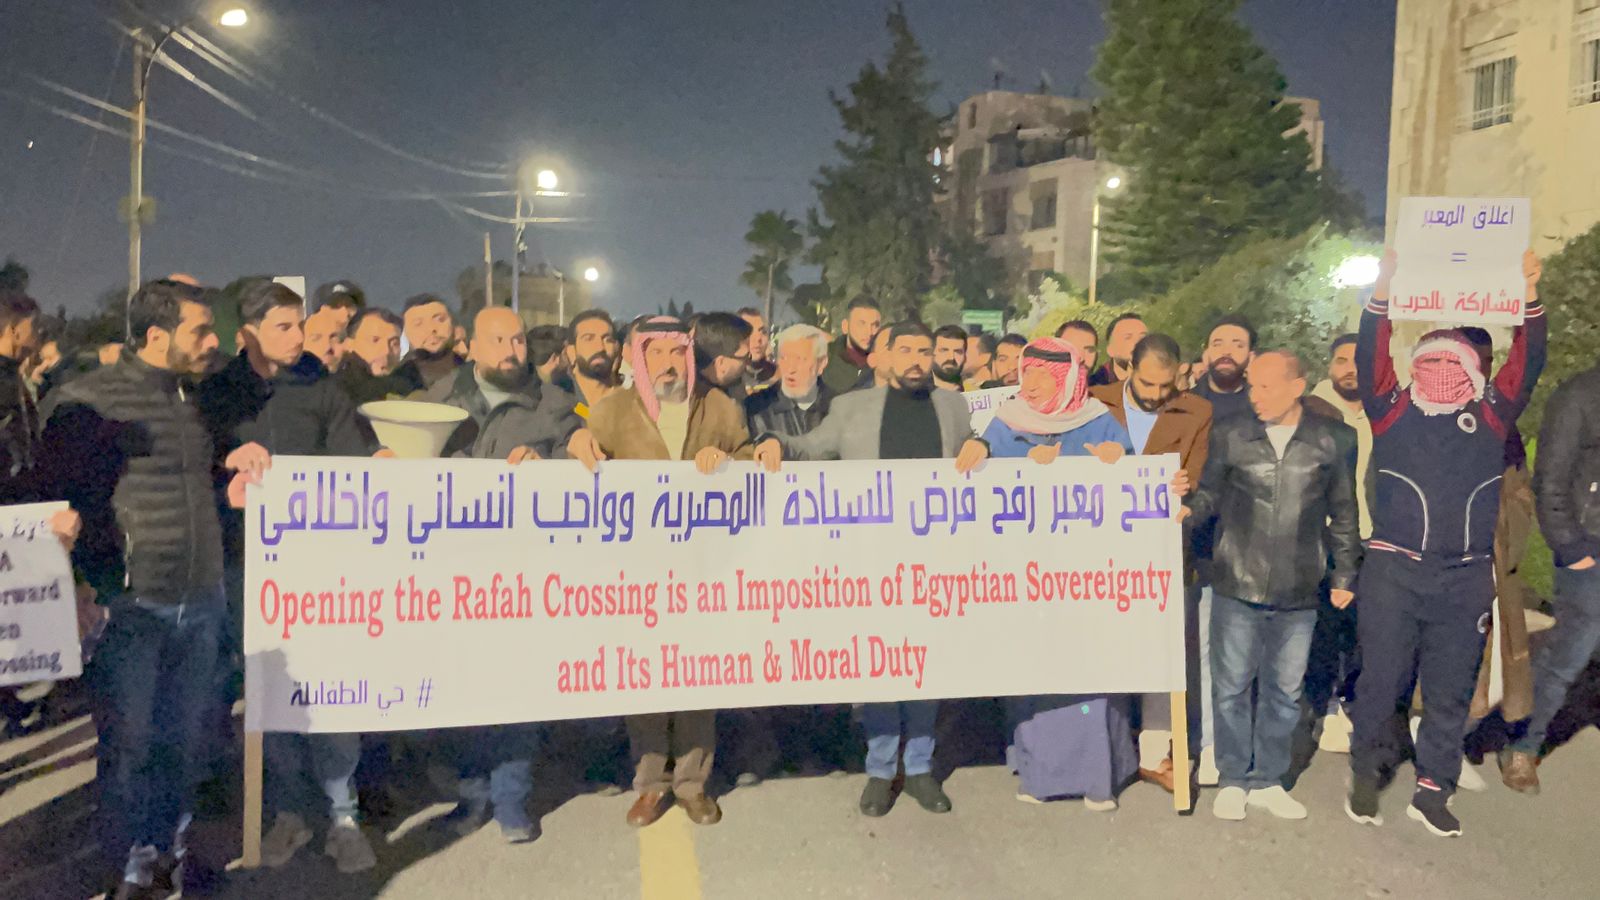 ابناء حي الطفايلة يعتصمون امام السفارة المصرية للمطالبة بفتح معبر رفح - صور